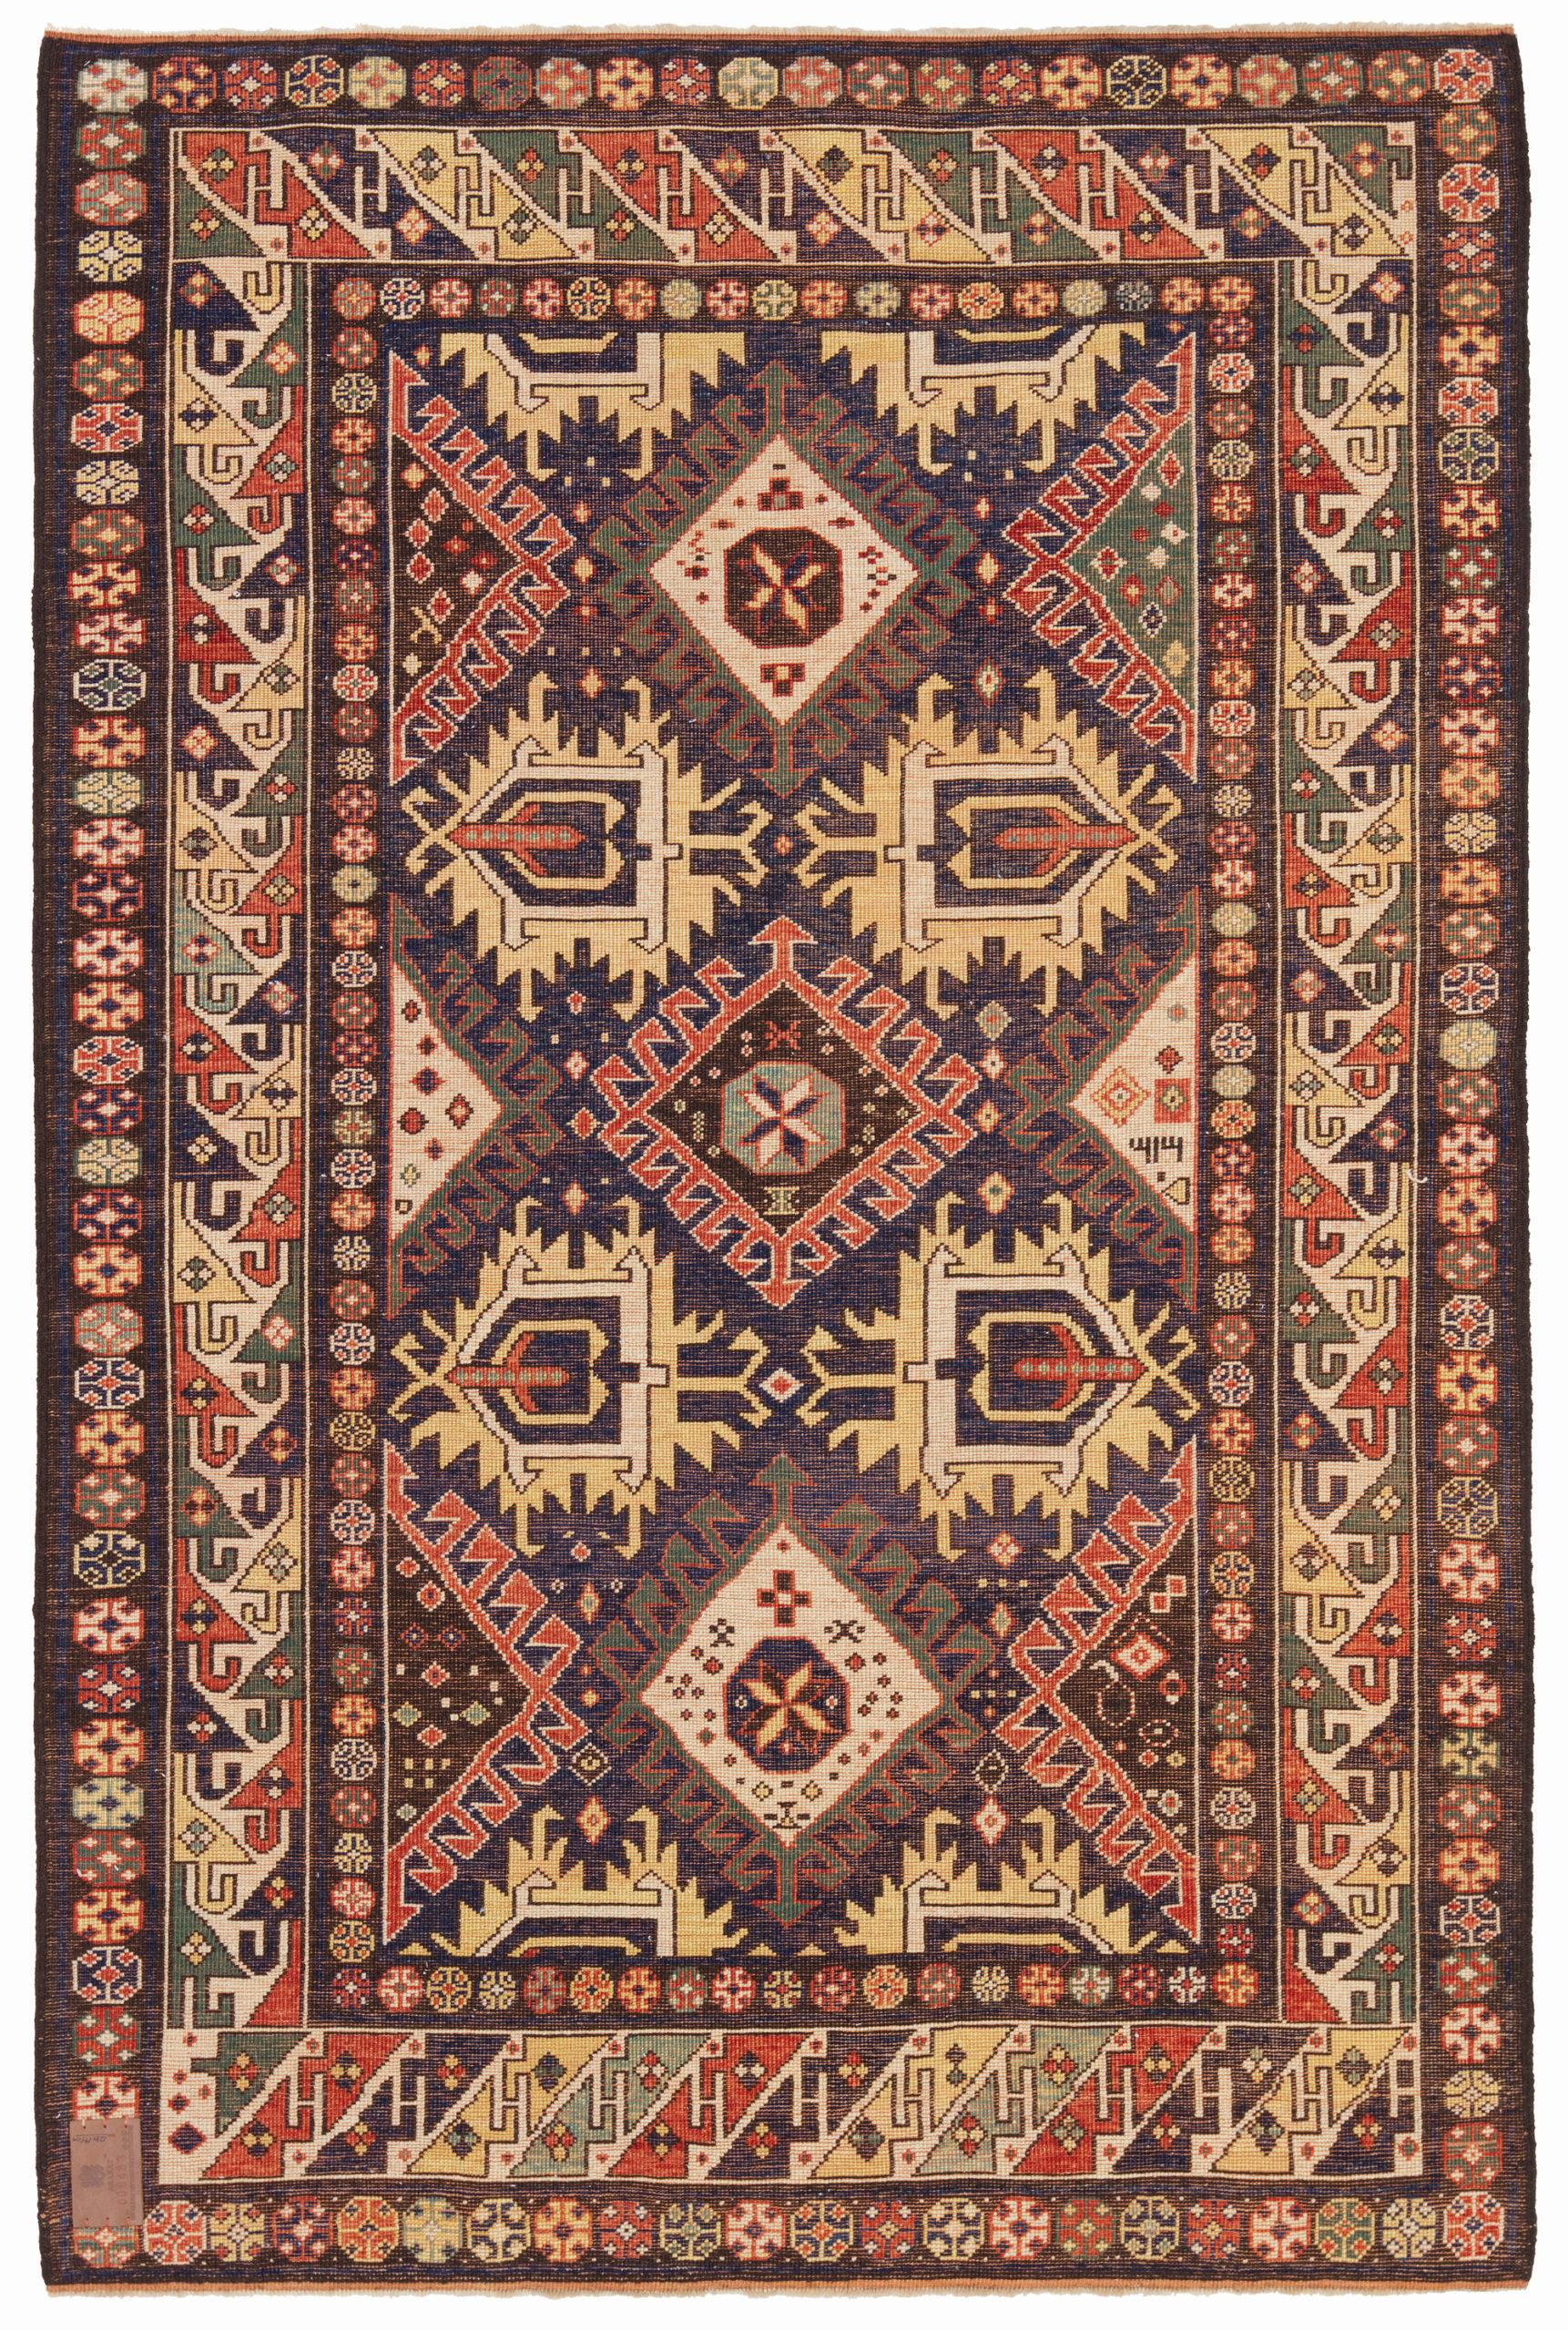 Dies ist ein Derbend-Kazak-Teppich, der auch als Daghestan-Teppich bekannt ist. Er wurde Ende des 19. Jahrhunderts entworfen und ist eine Art handgewebter Teppich, der aus der Kaukasusregion stammt, insbesondere aus der Stadt Derbend (auch Derbent